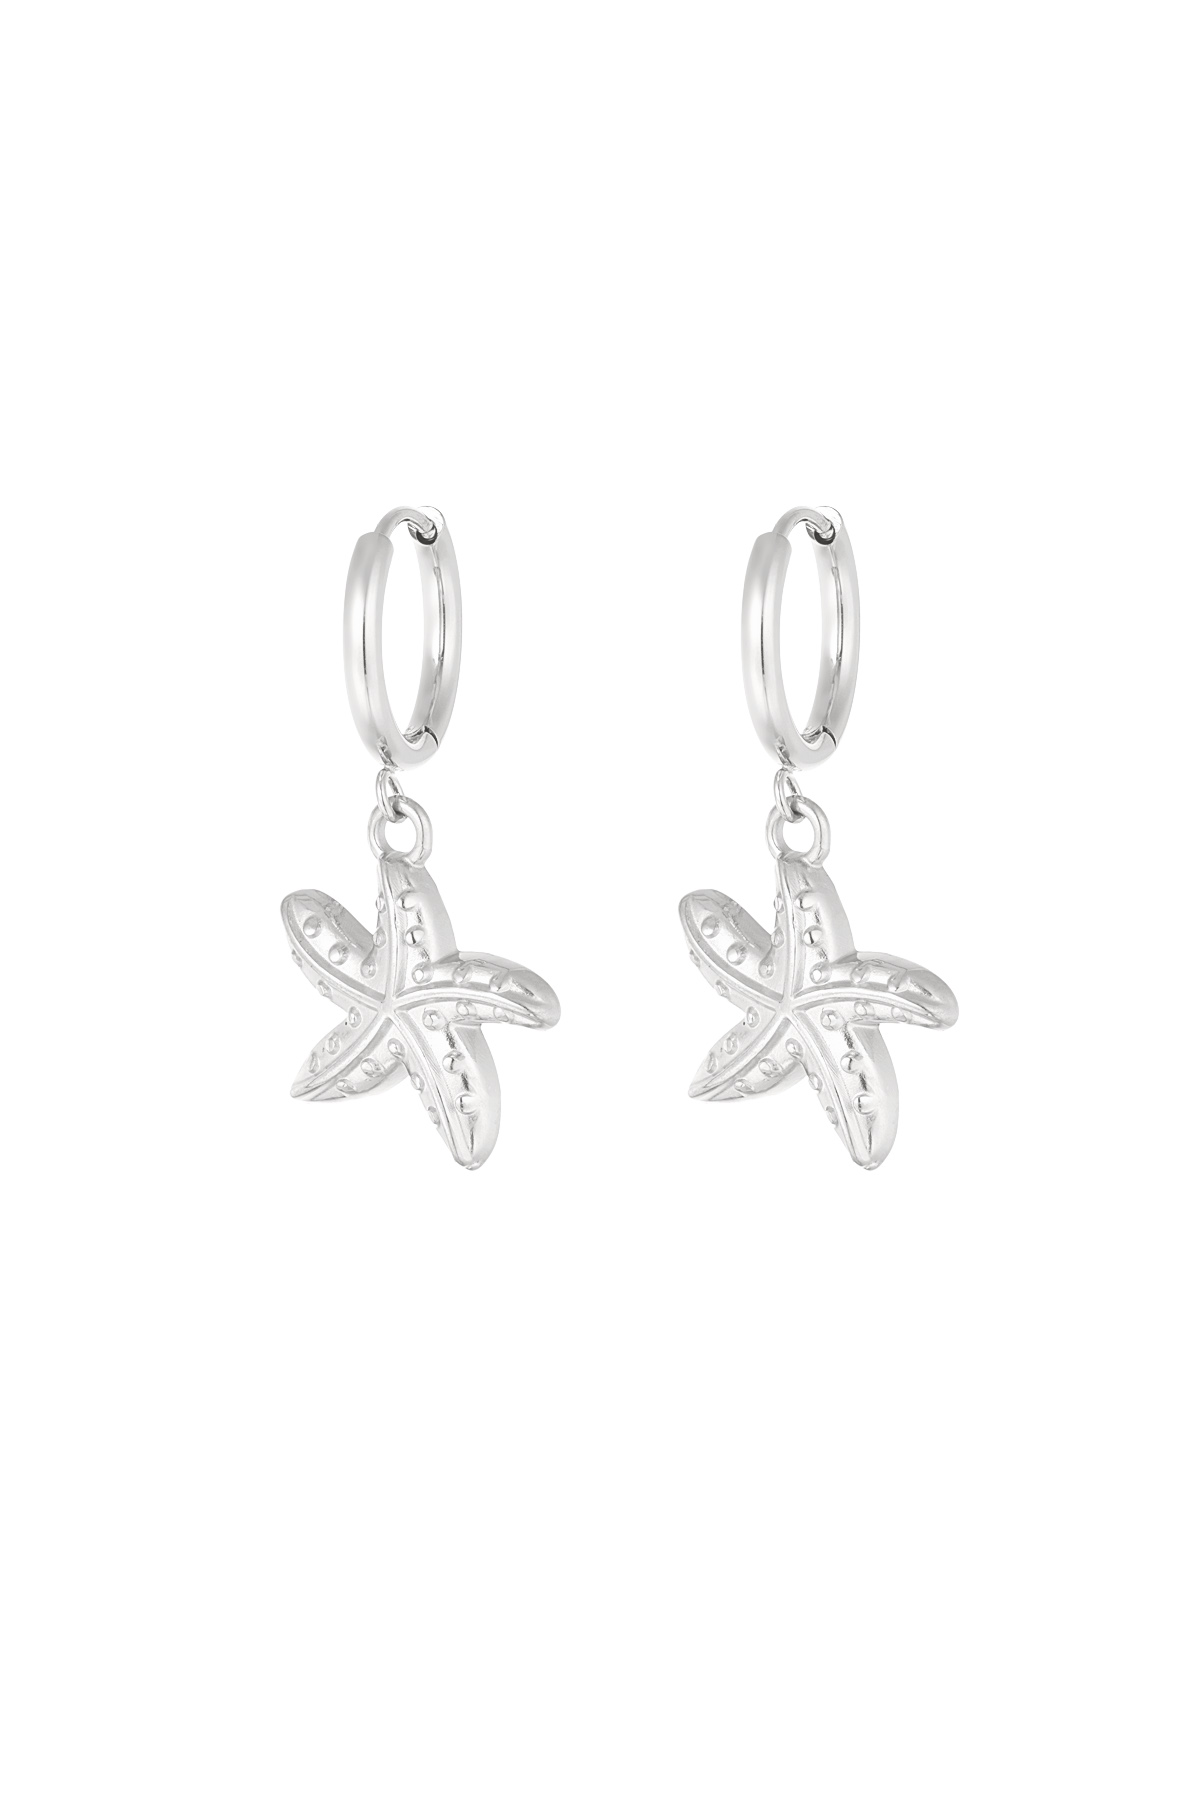 Orecchini speciali stella marina - argento h5 